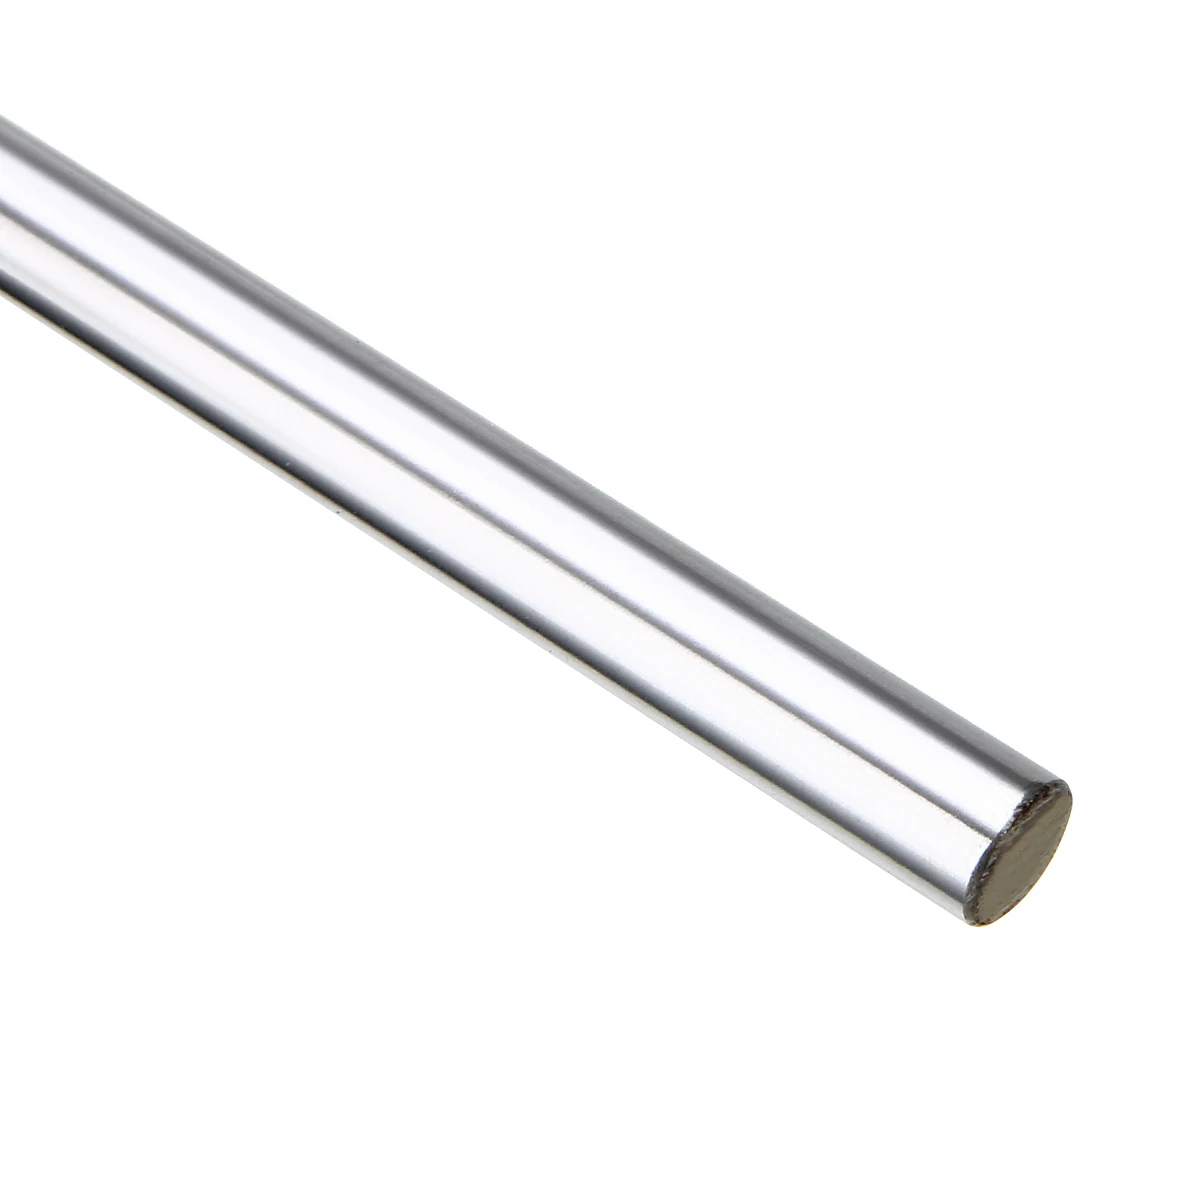 1X8 мм цилиндр линейный рельс линейный вал оптическая ось 600 мм длина подшипника стальной стержень бар для точной механической линейной